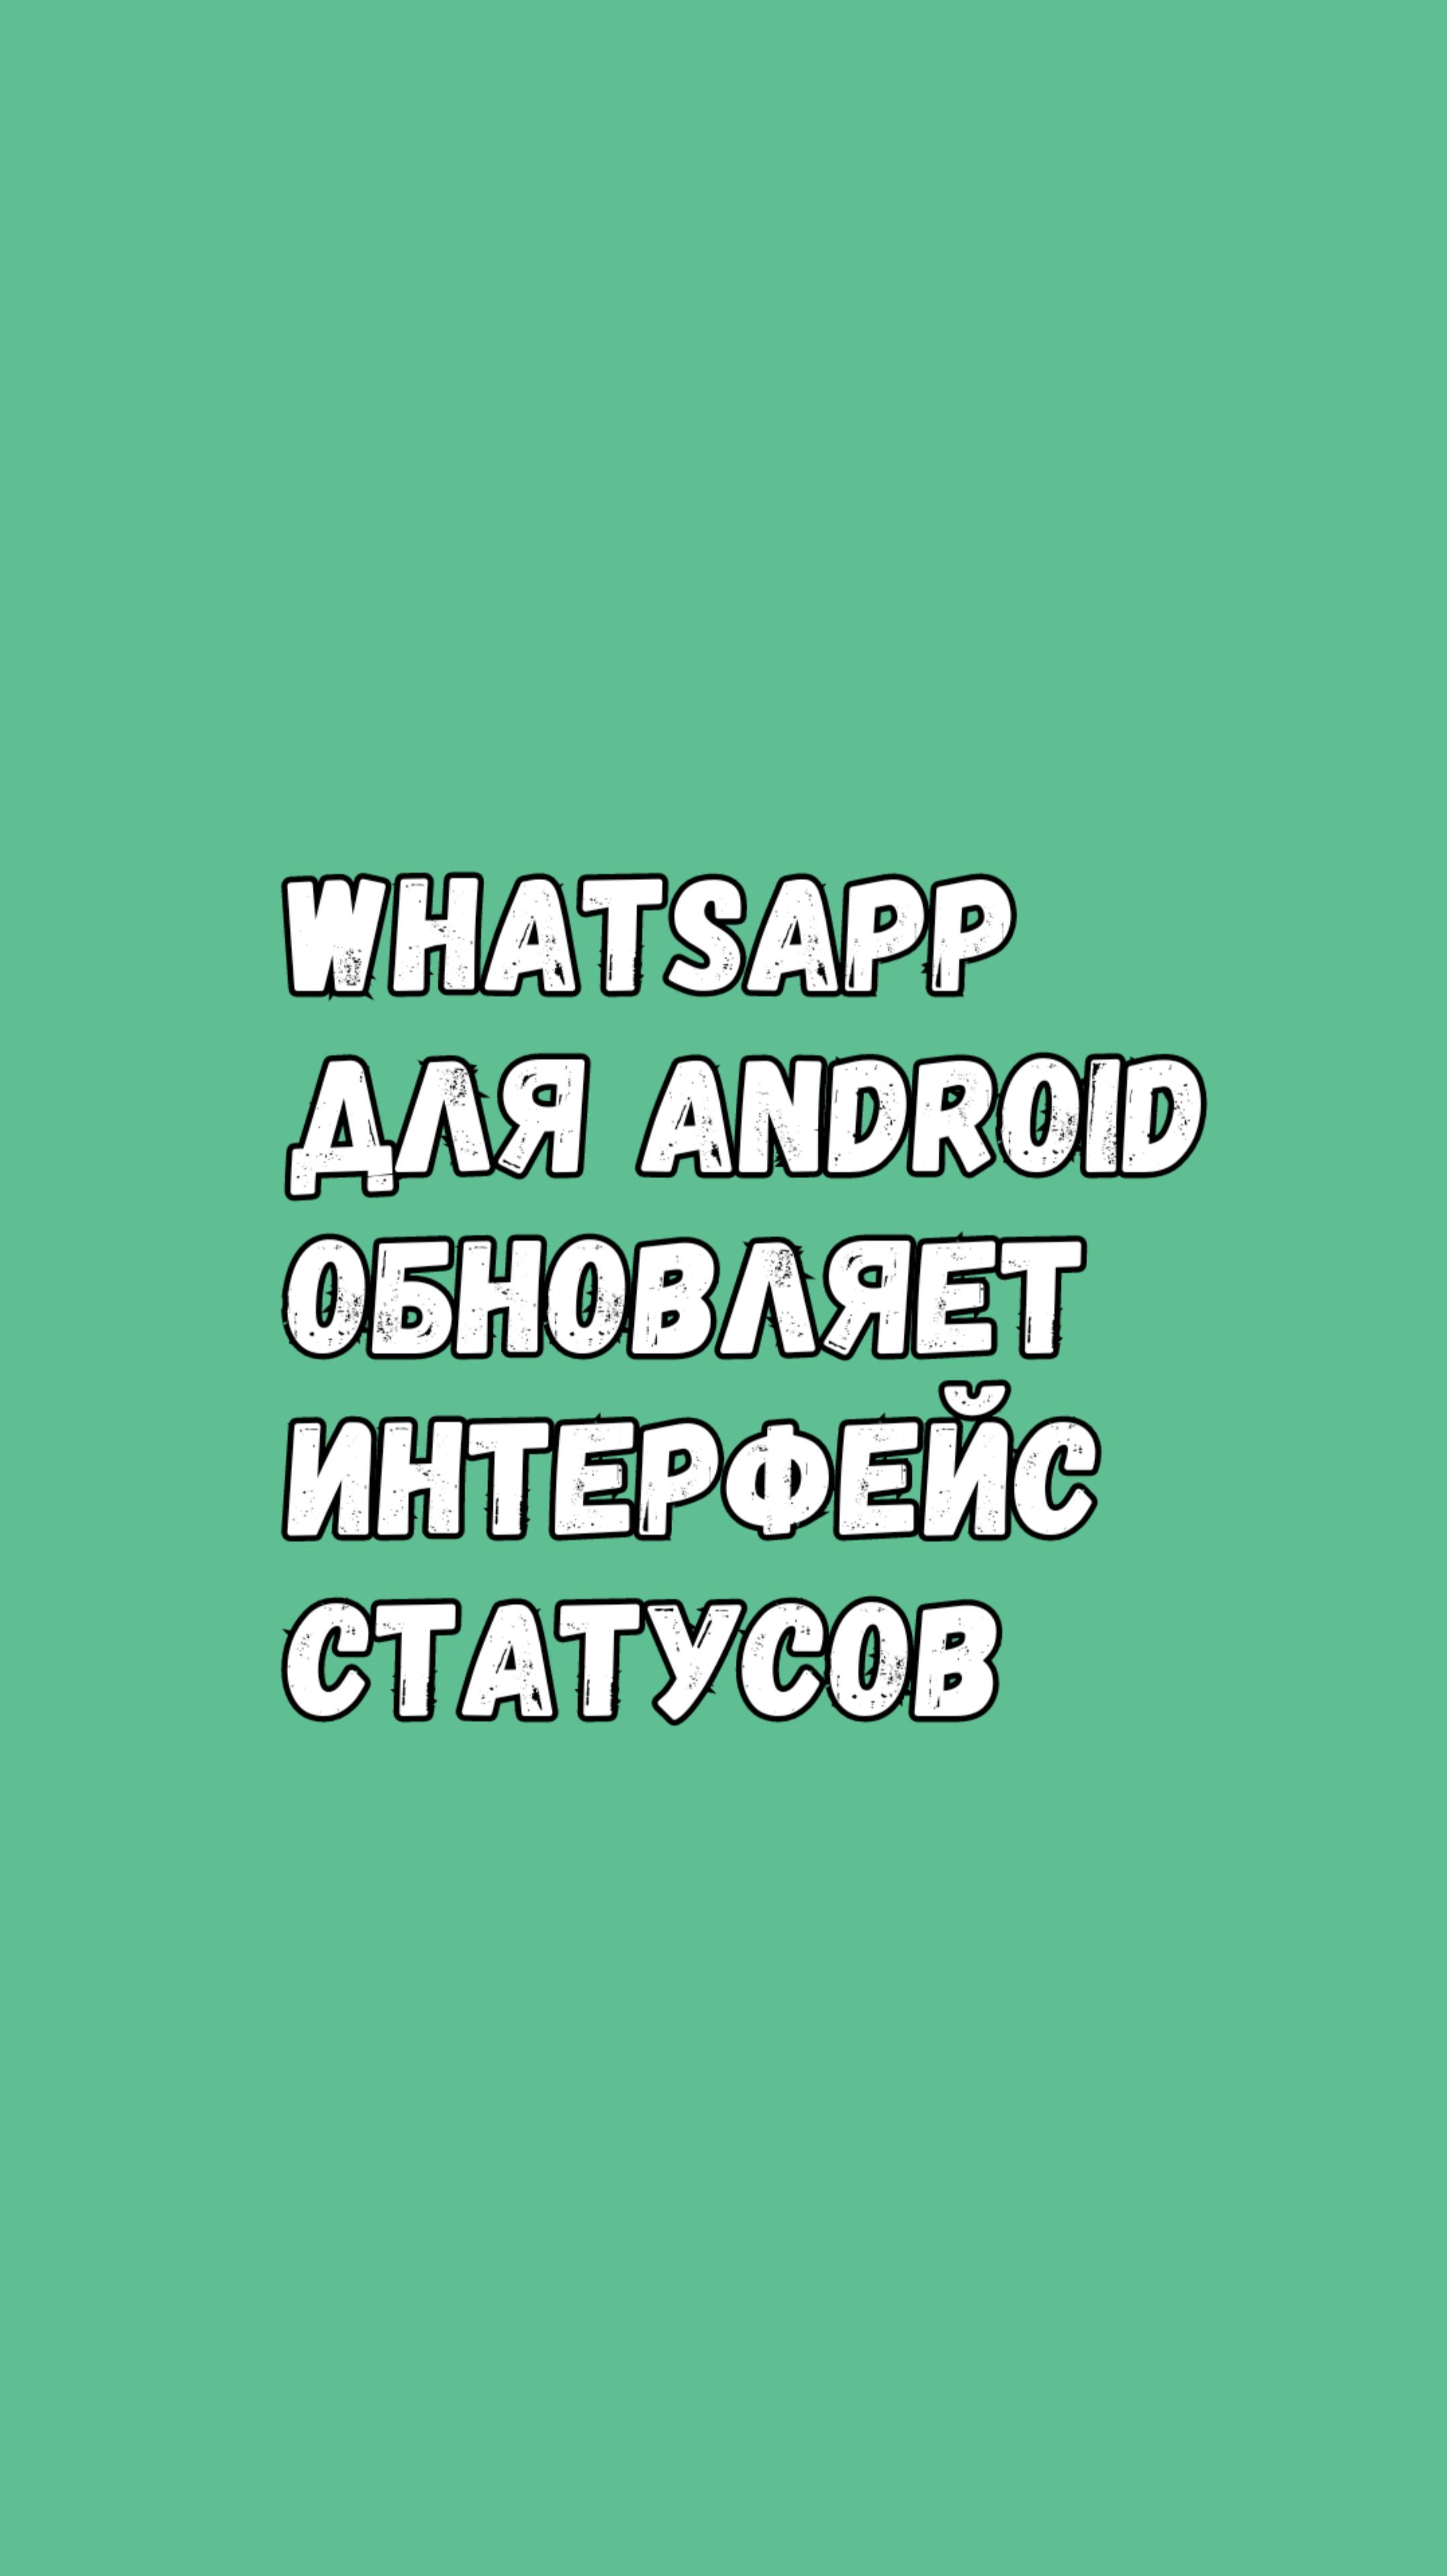 WhatsApp Запускает Новый Интерфейс Для Статусов